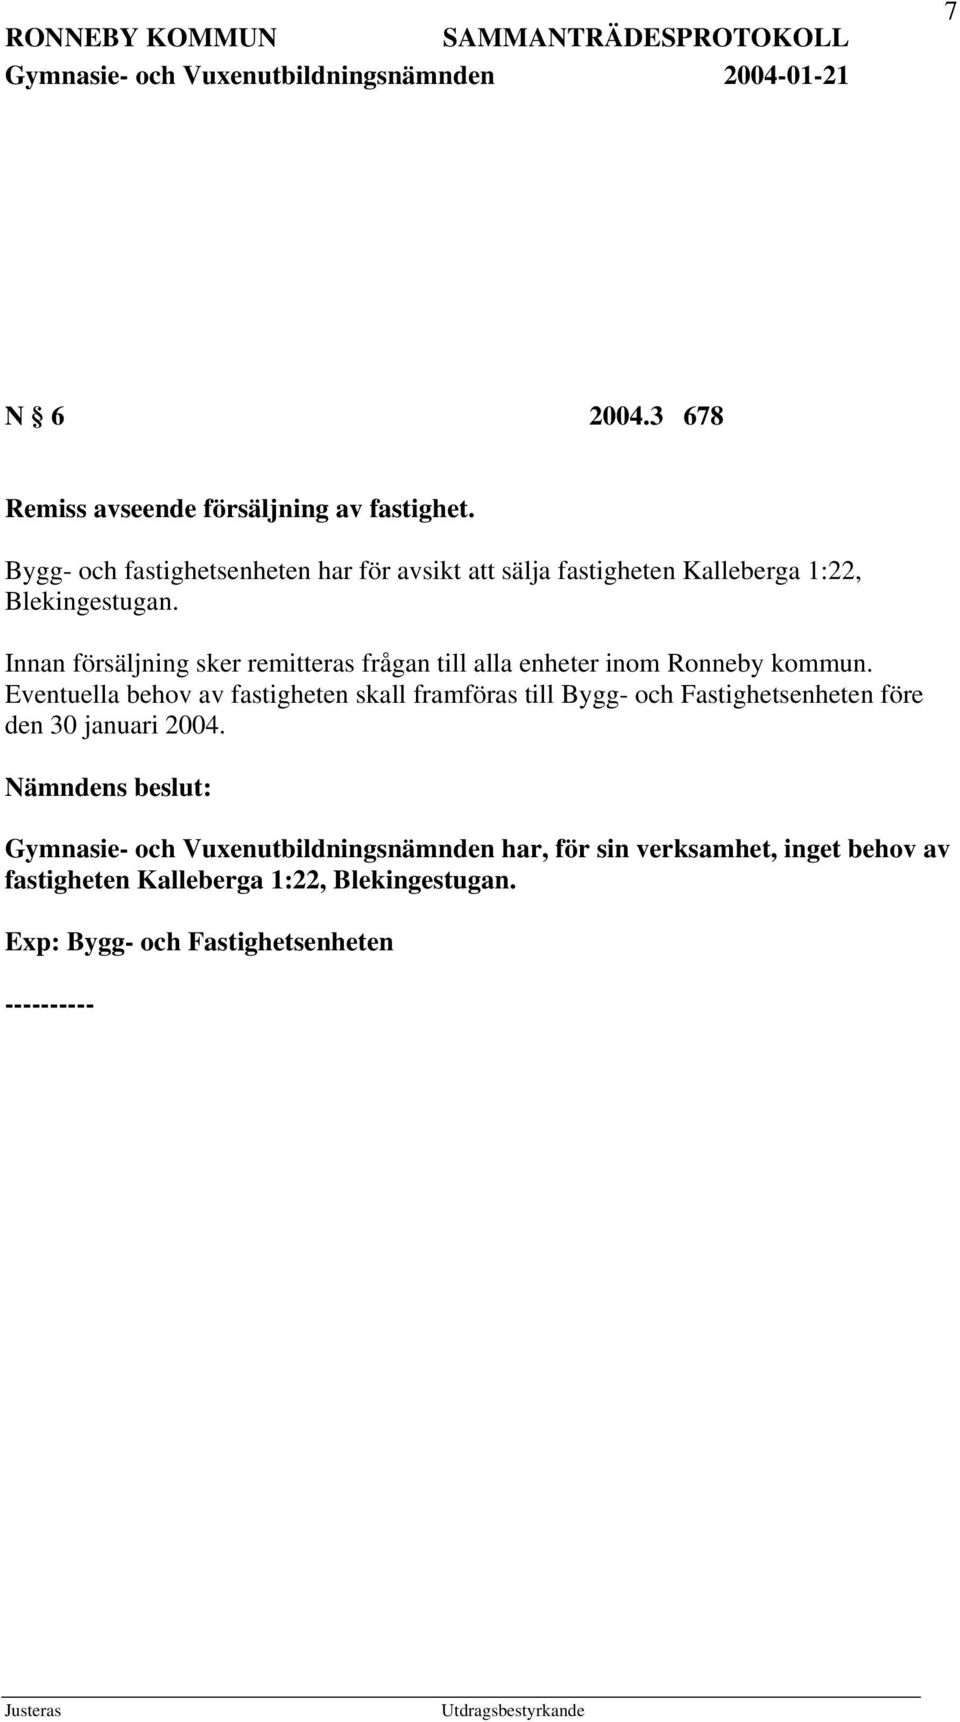 Innan försäljning sker remitteras frågan till alla enheter inom Ronneby kommun.